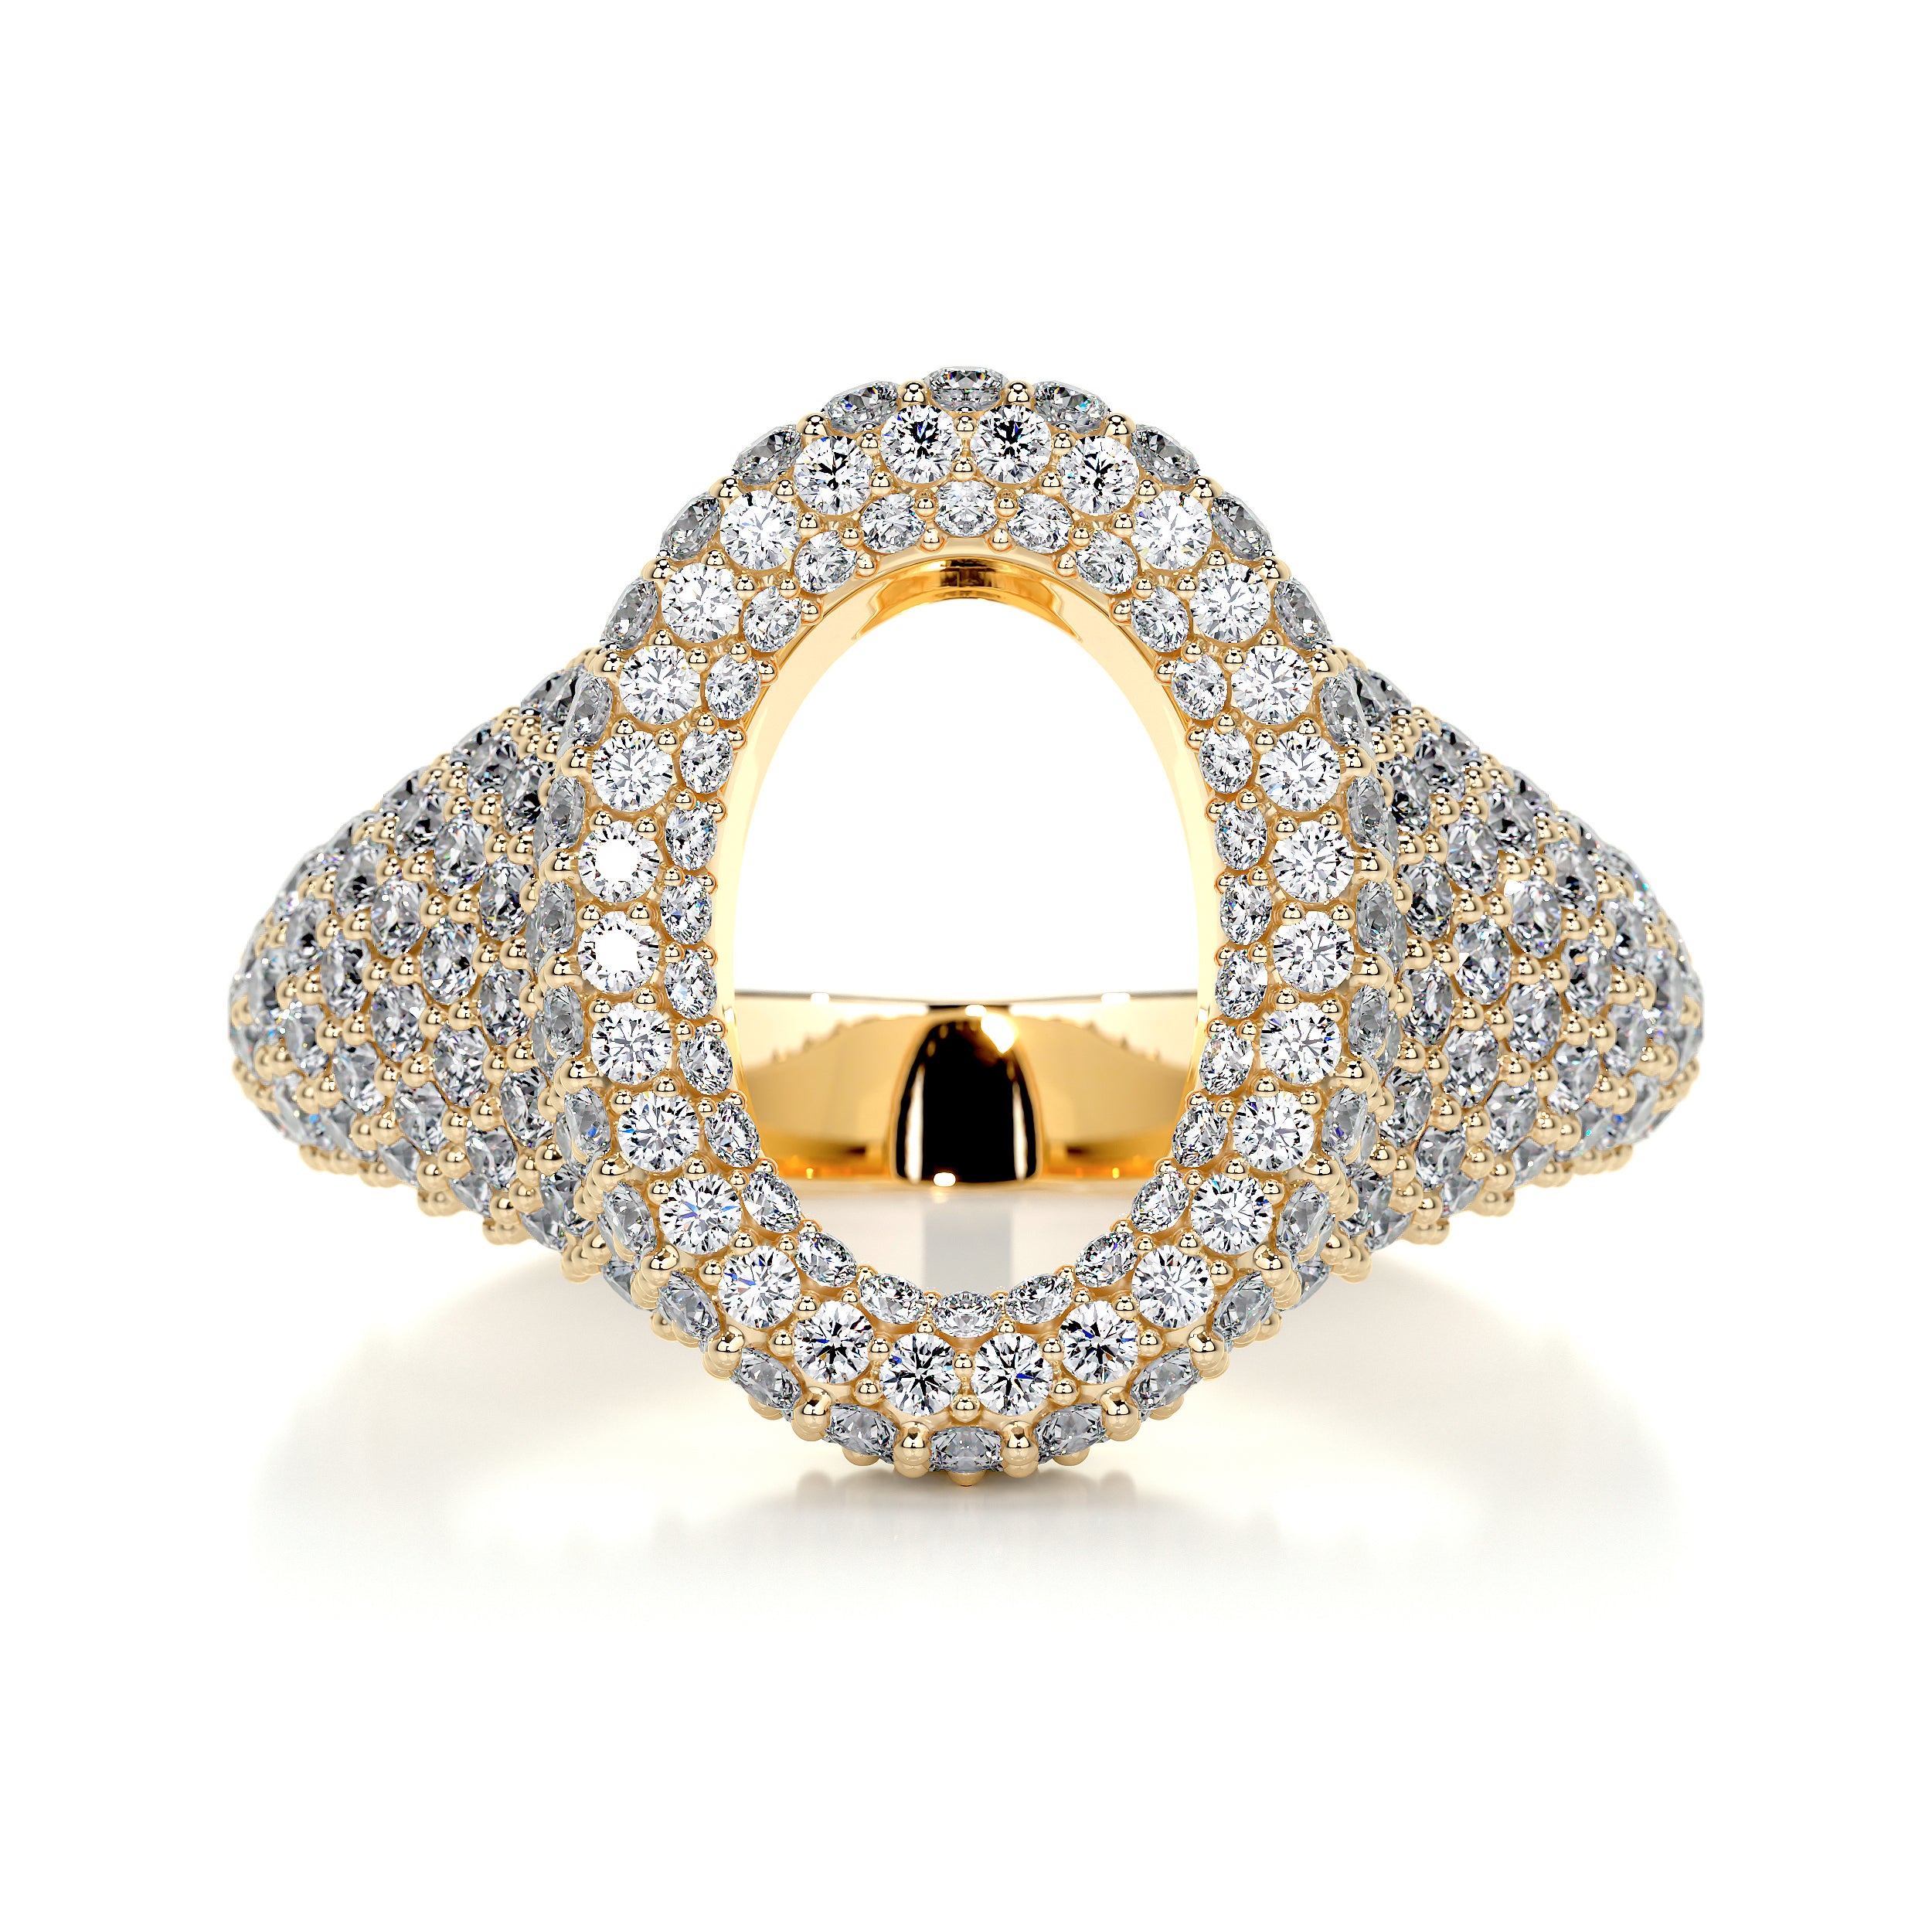 Angelina Wedding Ring   (1.4 Carat) -18K Yellow Gold